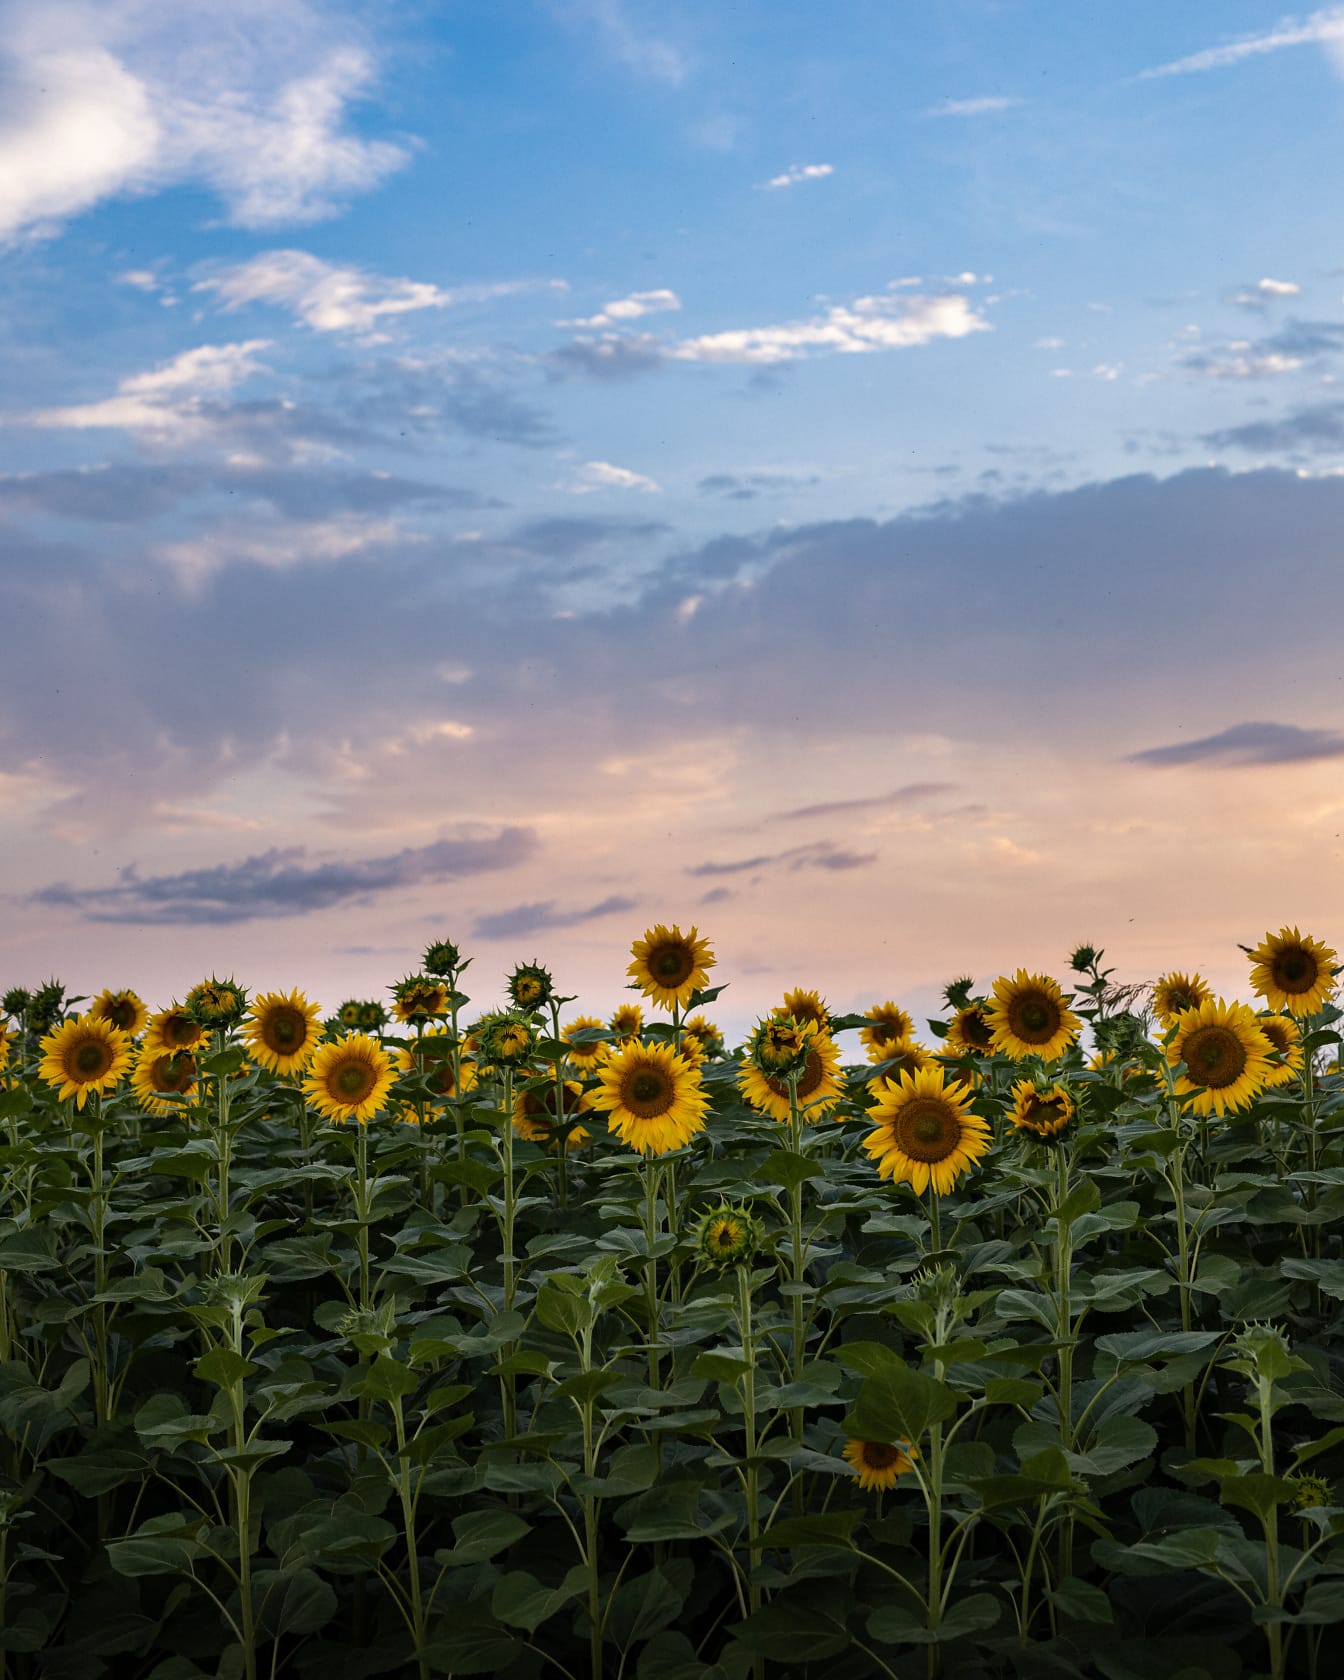  Landwirtschaft Hintergrundbild 1344x1680. Kostenlose Bild: Abend, landwirtschaftlich, Sonnenblume, Feld, des ländlichen Raums, Blume, Landwirtschaft